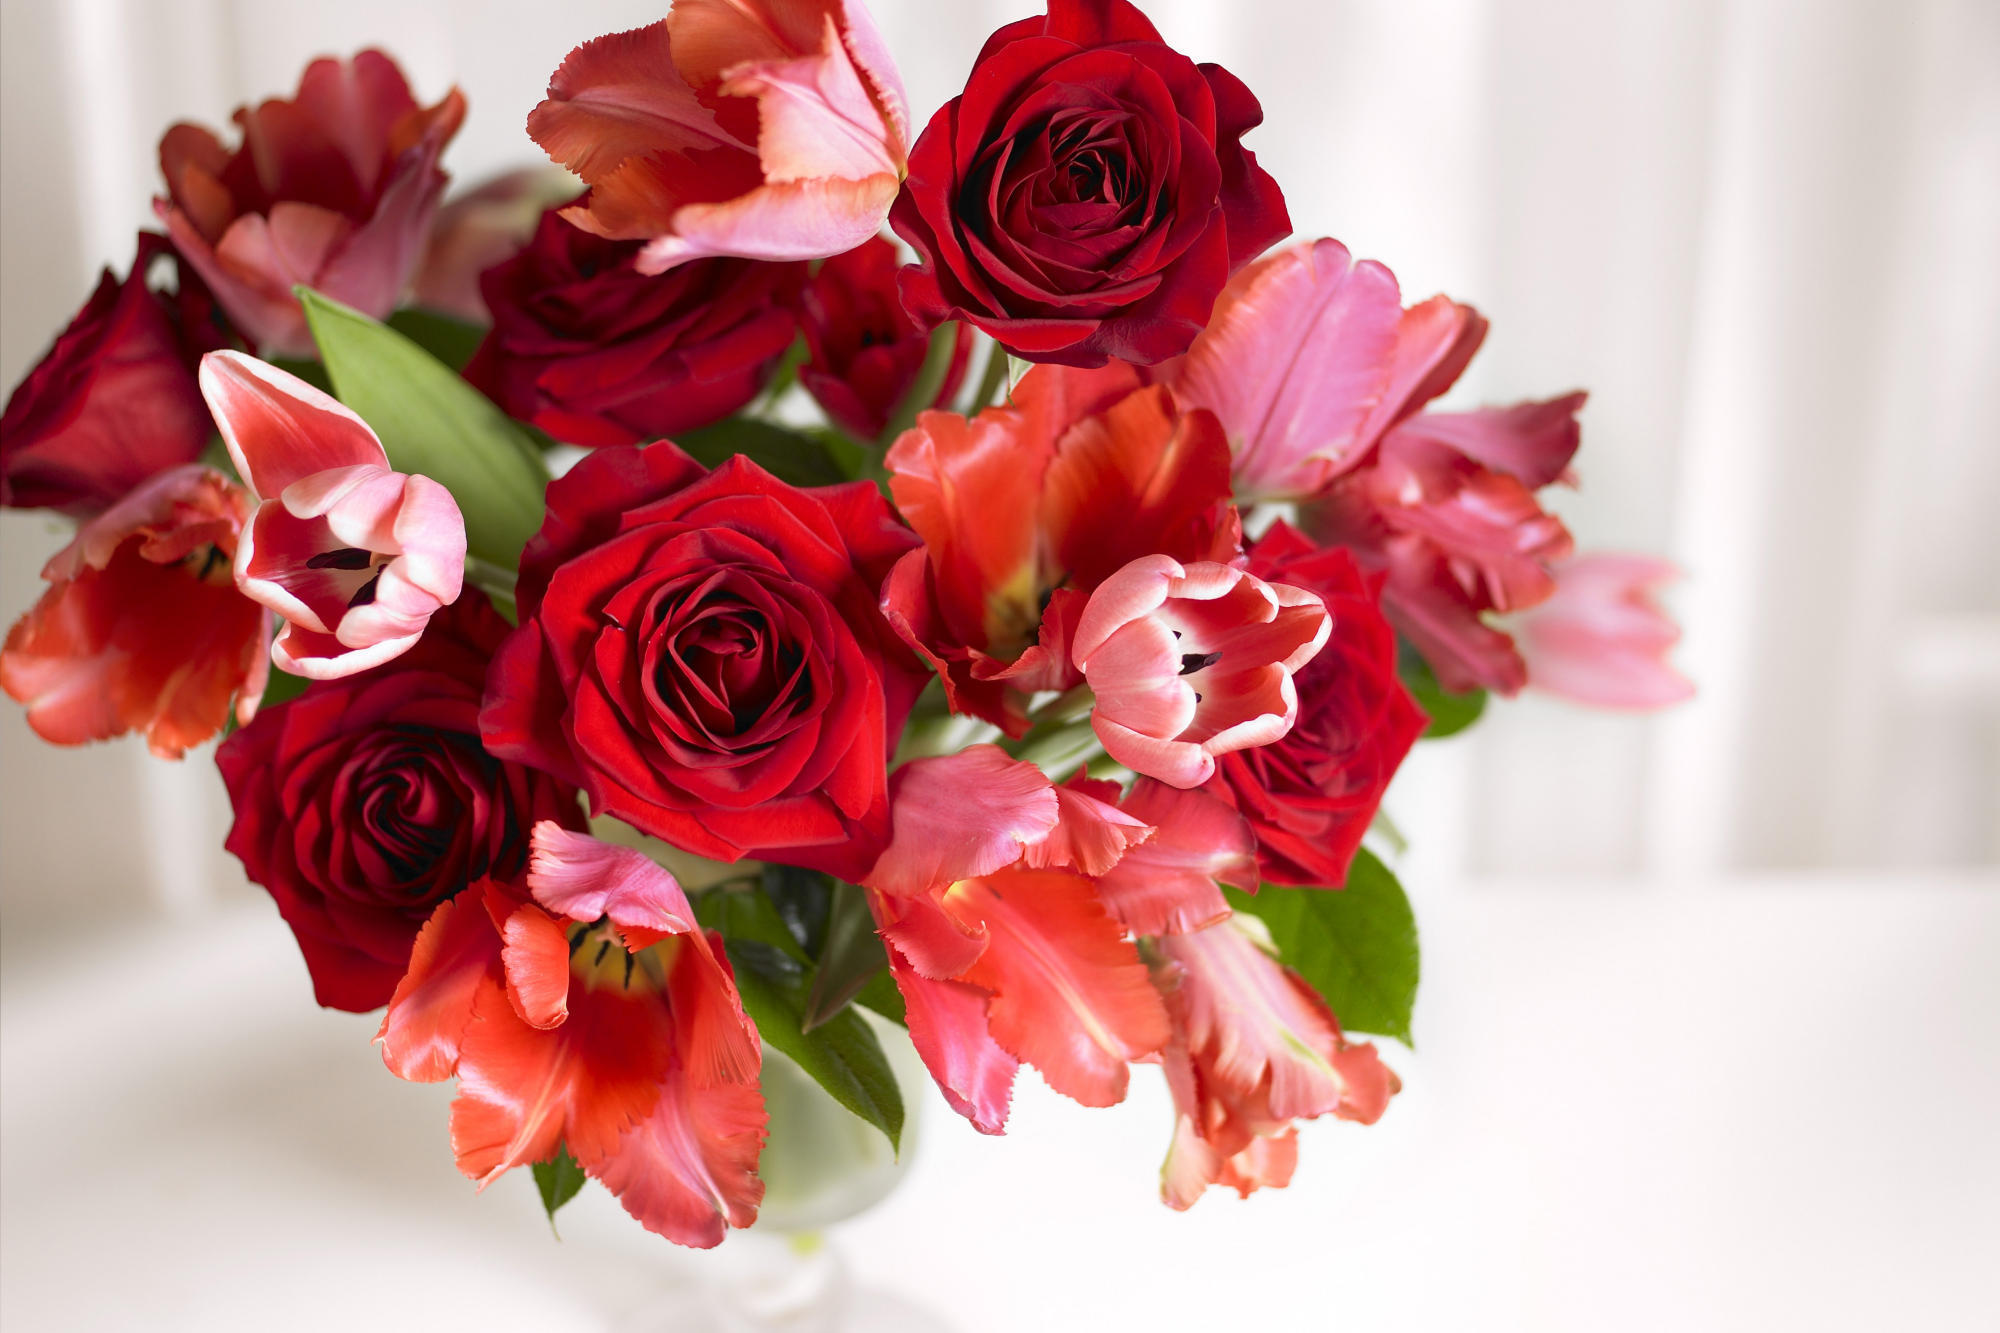 Скачать обои бесплатно Растения, Цветы, Розы, Тюльпаны картинка на рабочий стол ПК